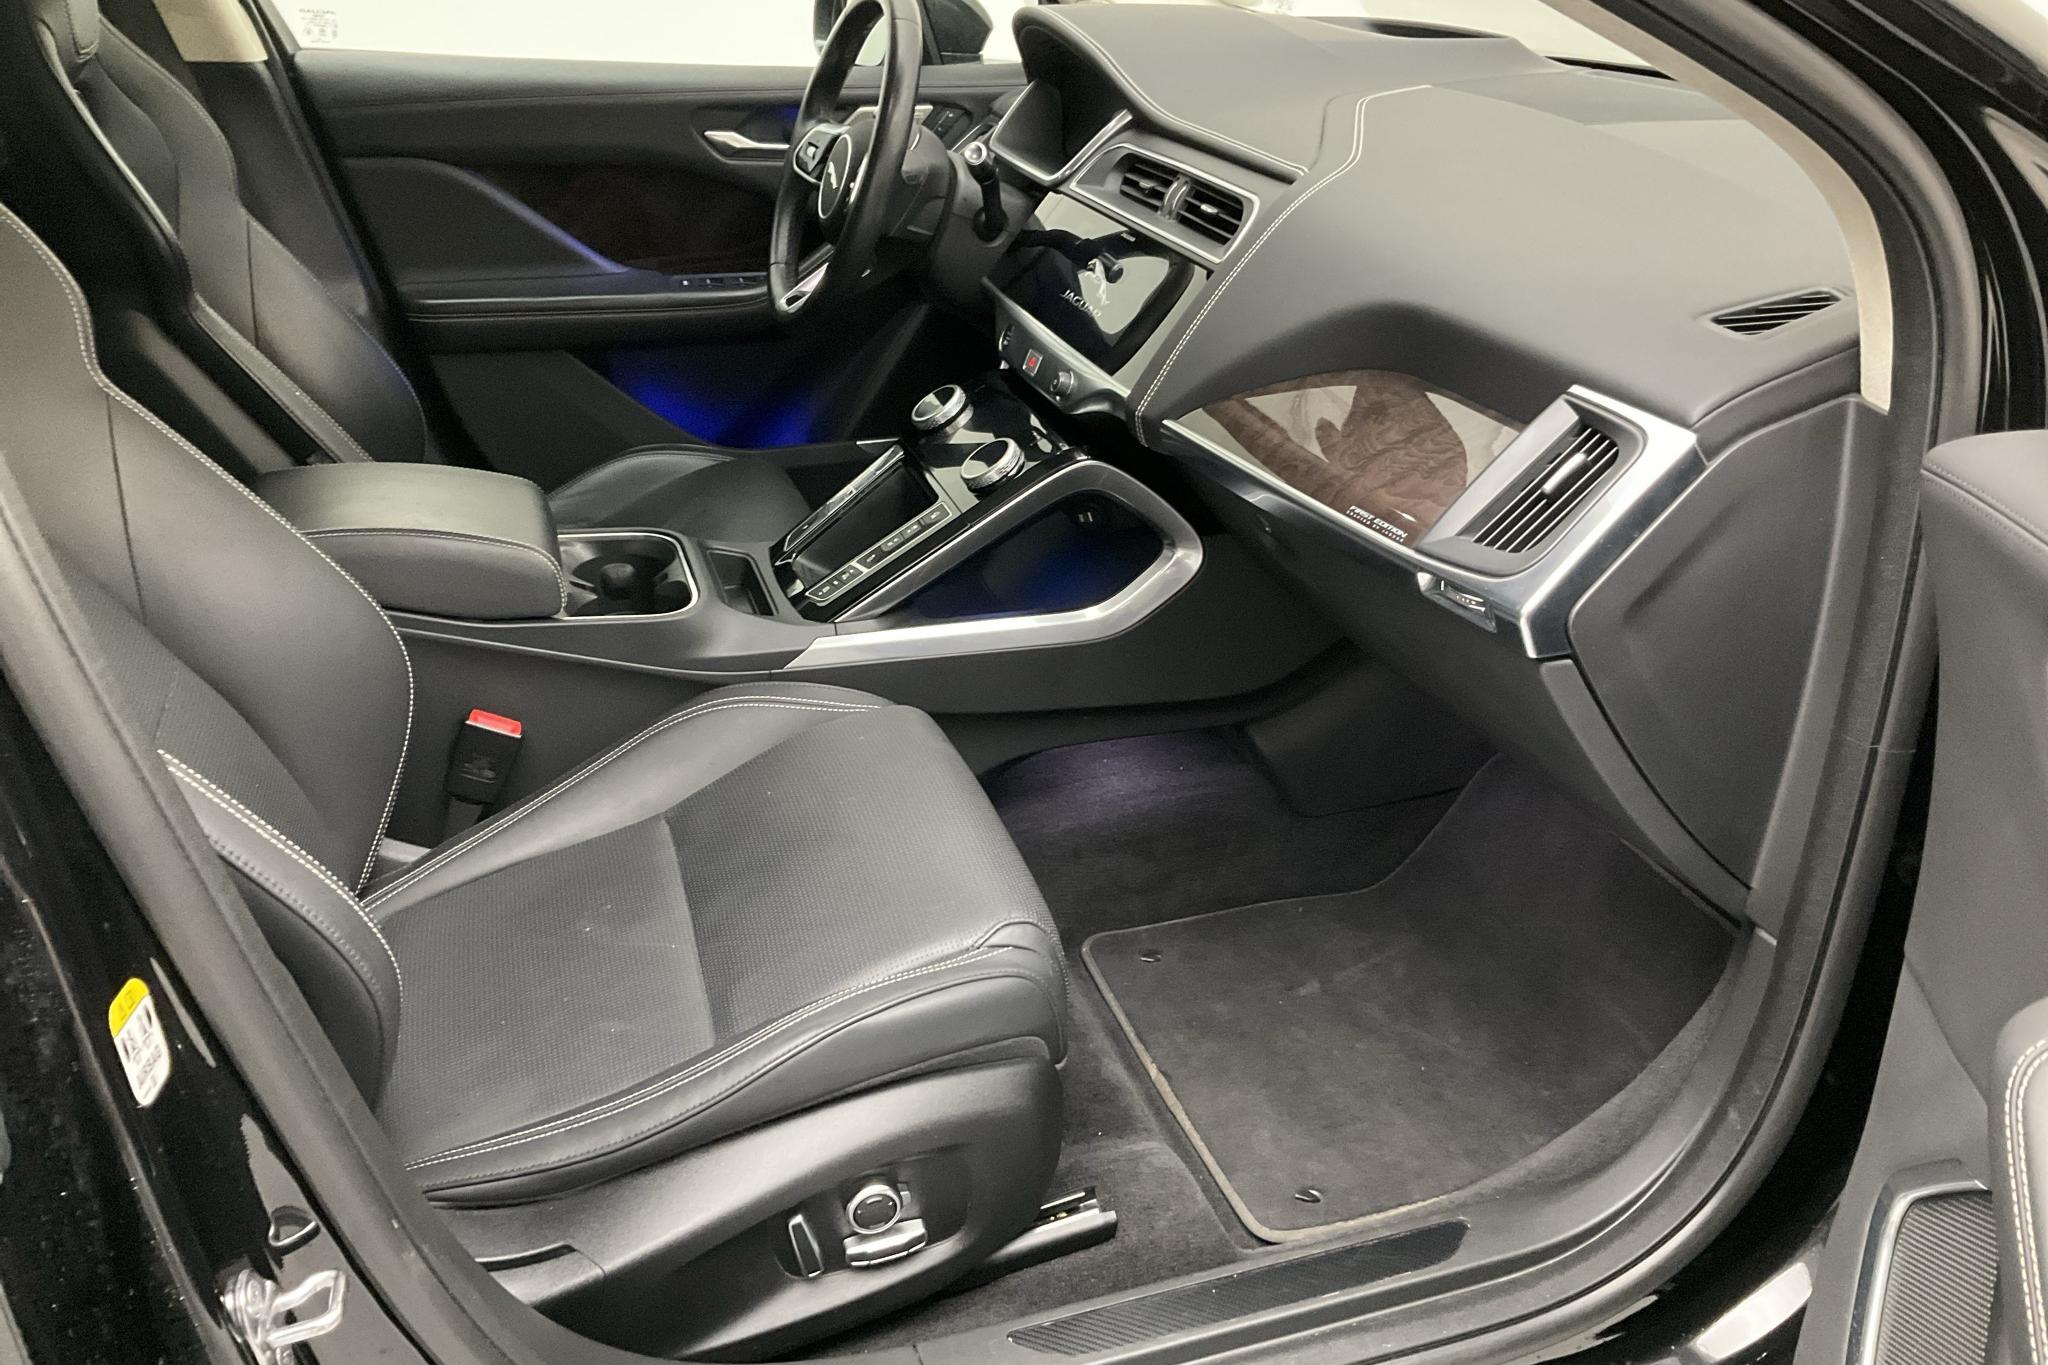 Jaguar I-Pace EV400 AWD (400hk) - 9 904 mil - Automat - svart - 2019